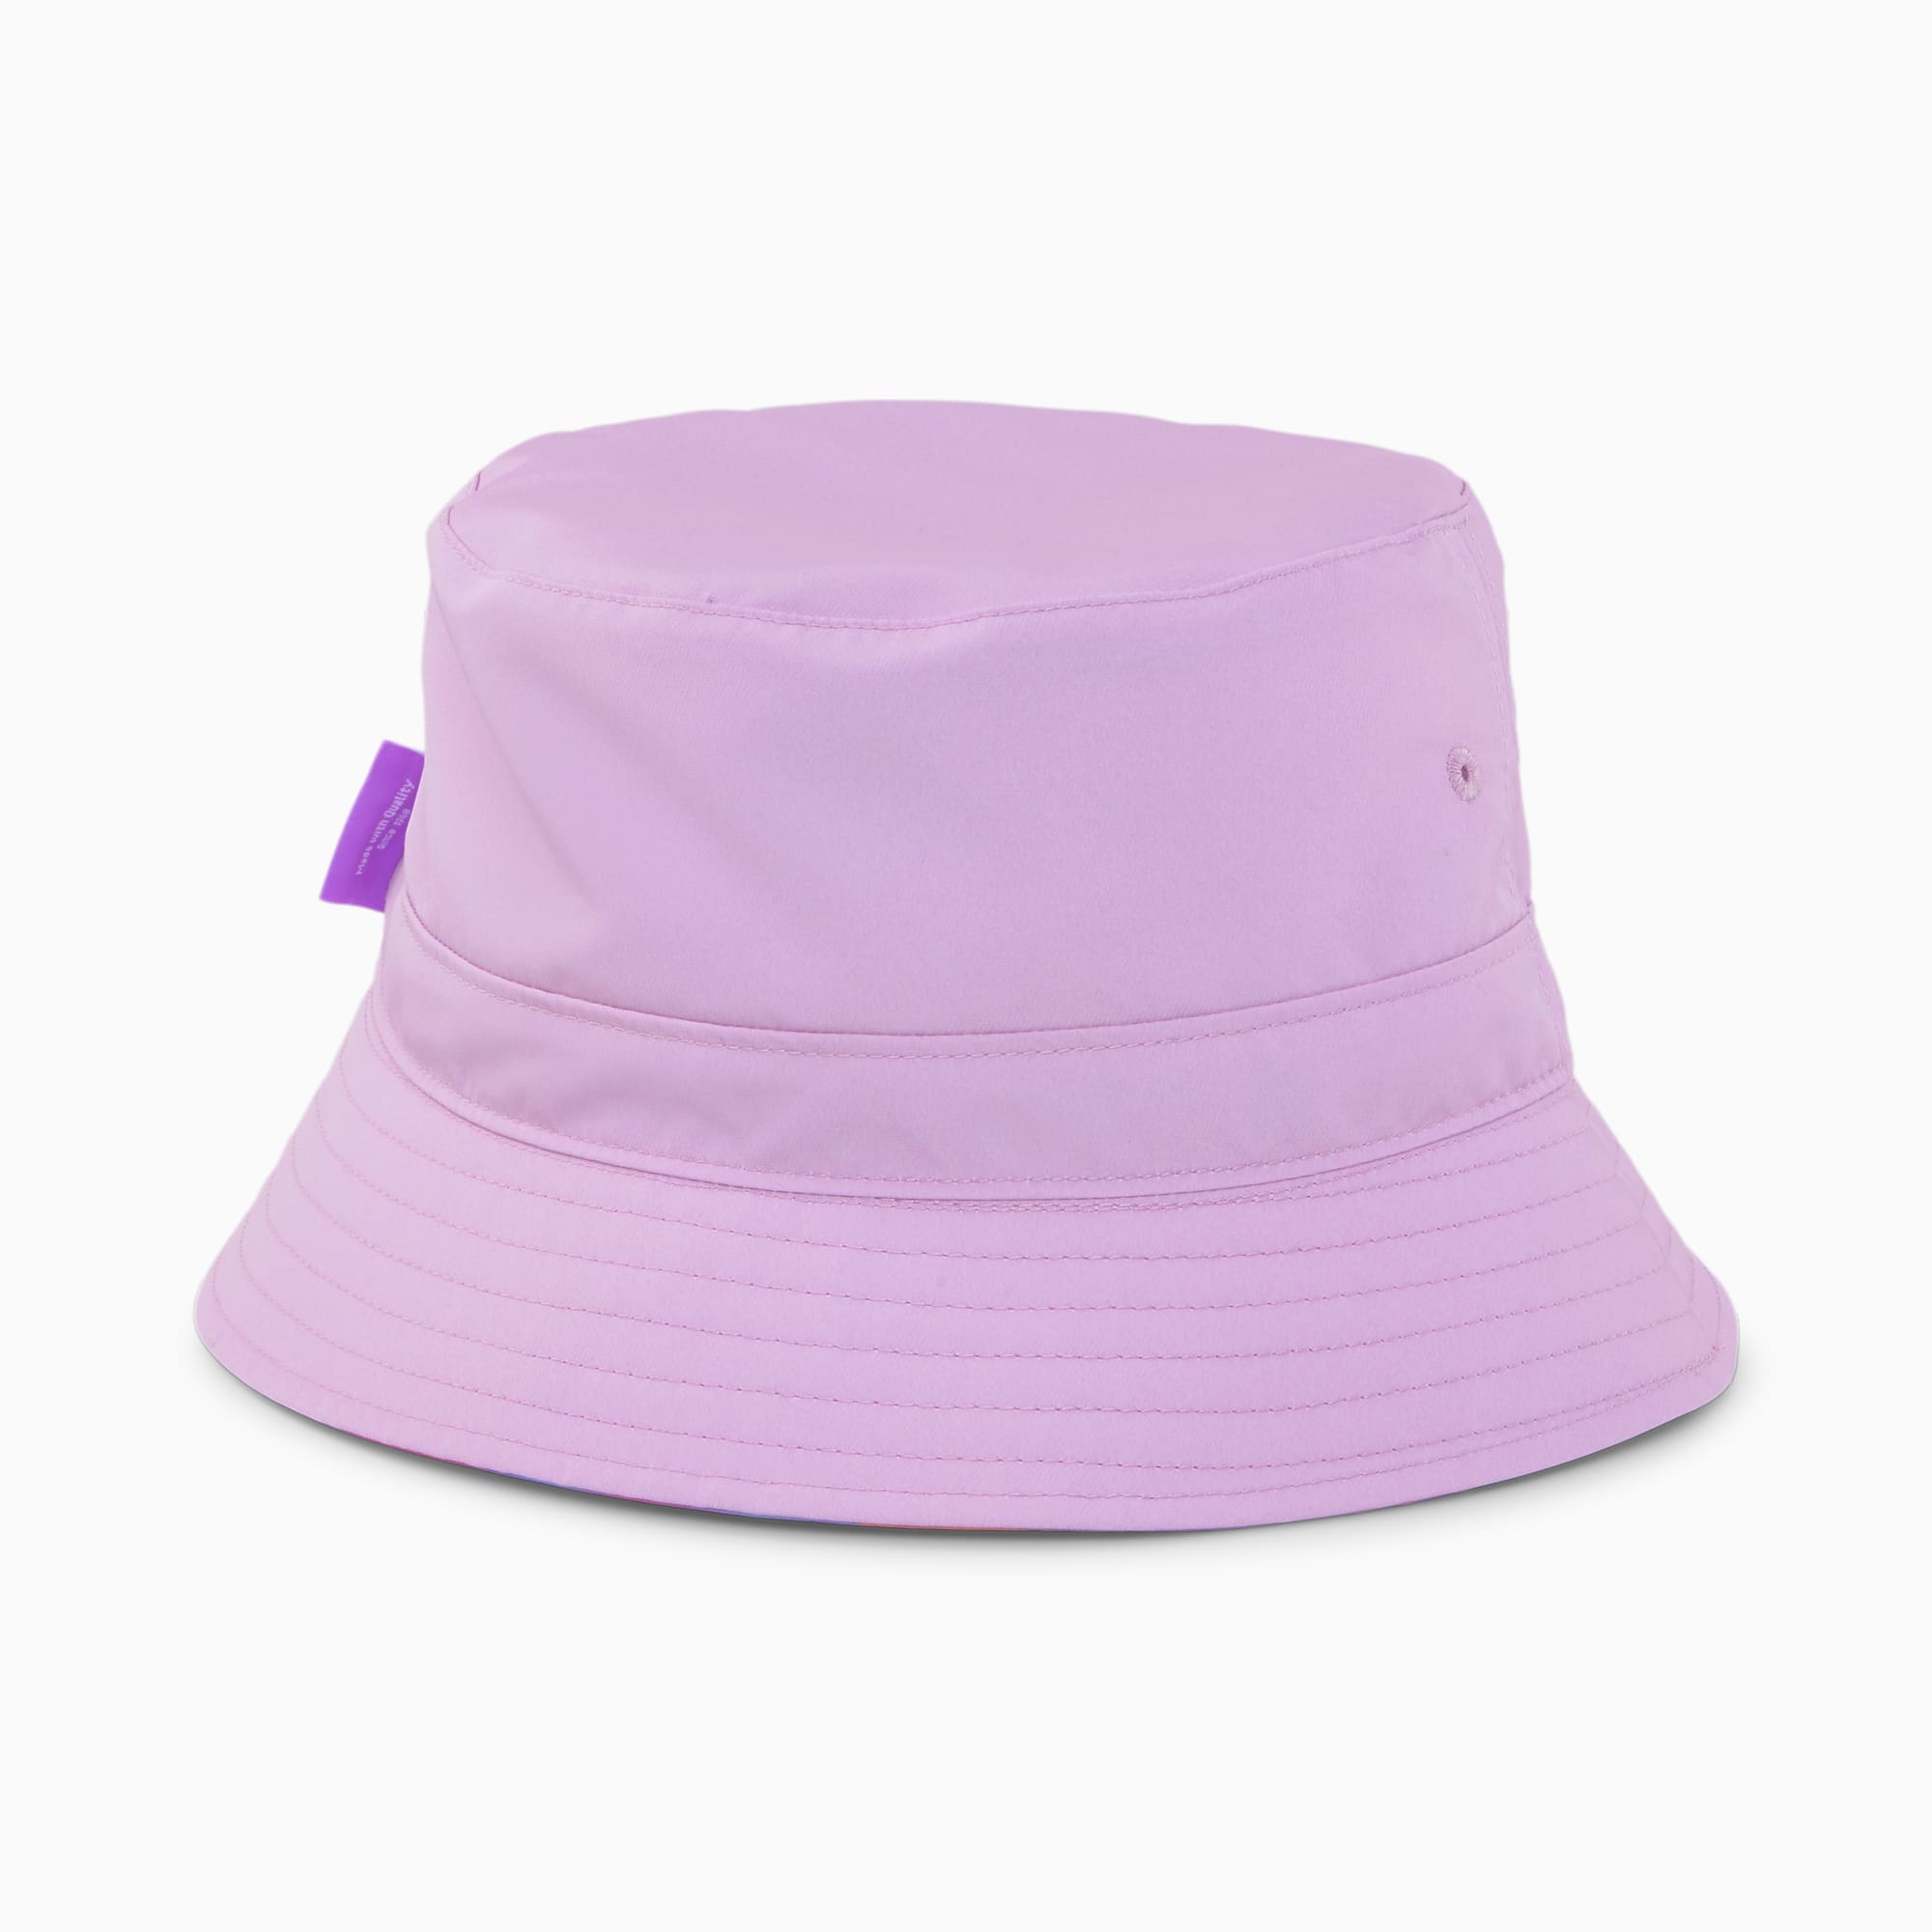 PUMA X 8ENJAMIN Bucket Hat Für Damen, Rosa, Größe: S/M, Accessoires